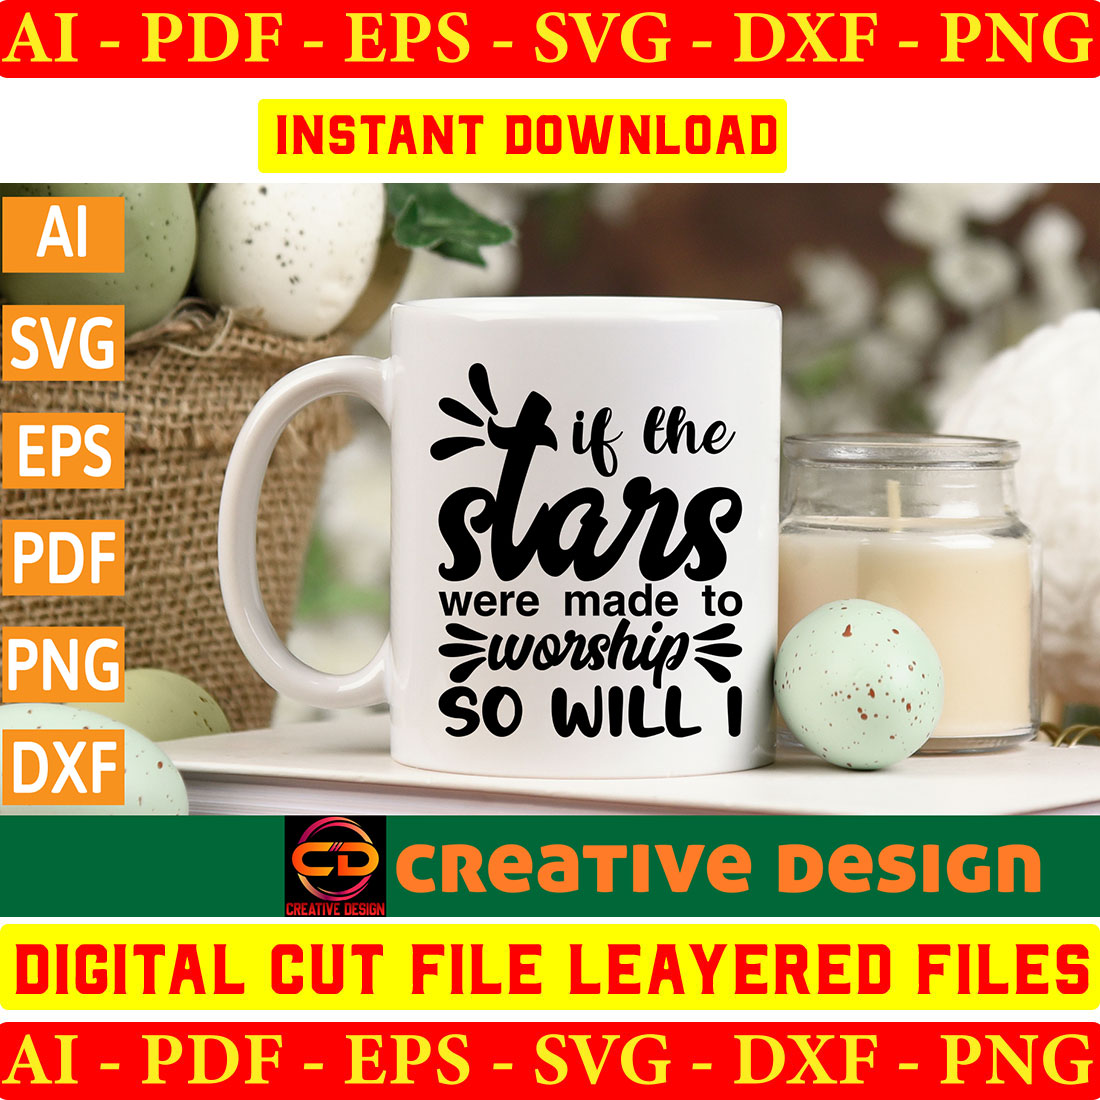 Digital download (1 ZIP) Materials: SVG, EPS, DXF, PNG, Cricut